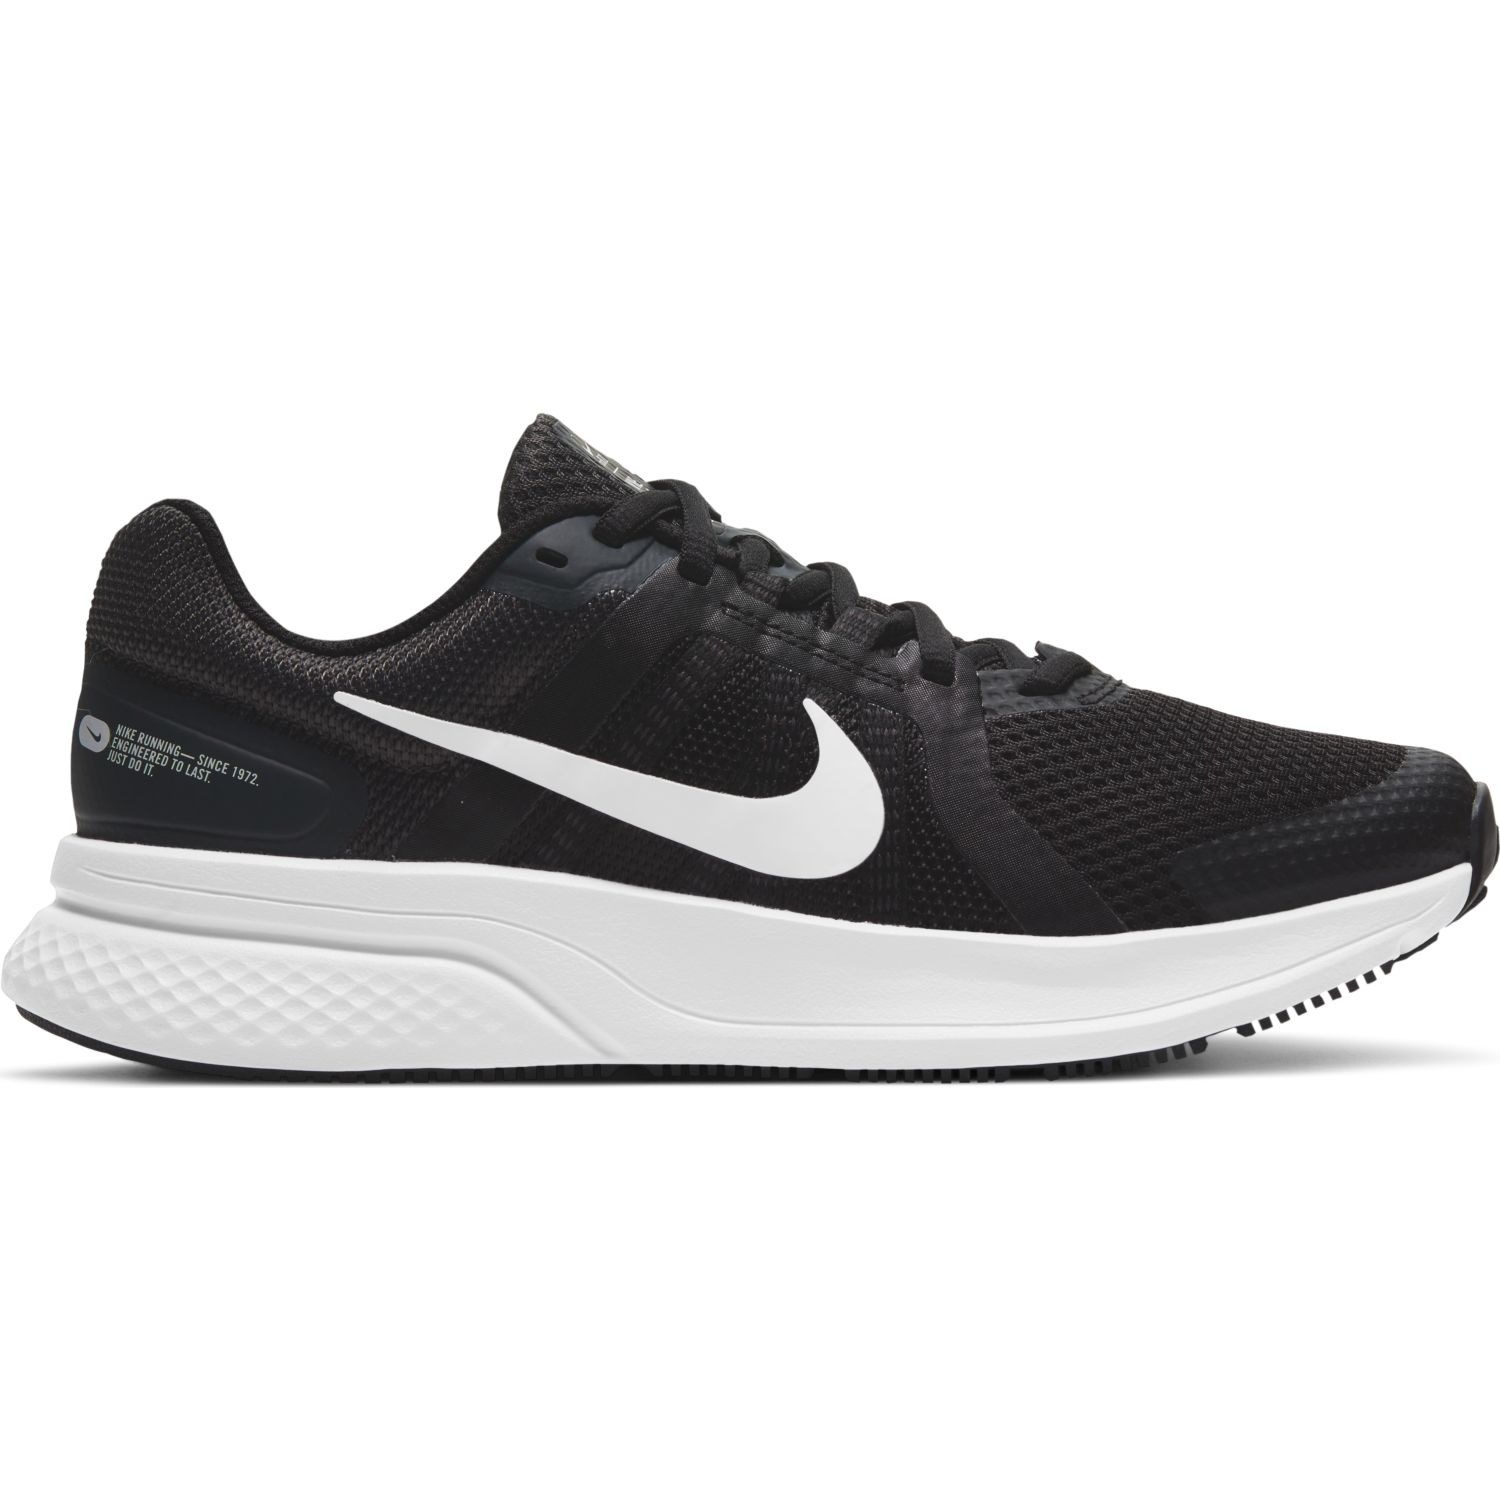 Nike Run Swift 2 - Womens Running Shoes - Black/White/Dark Smoke Grey ...